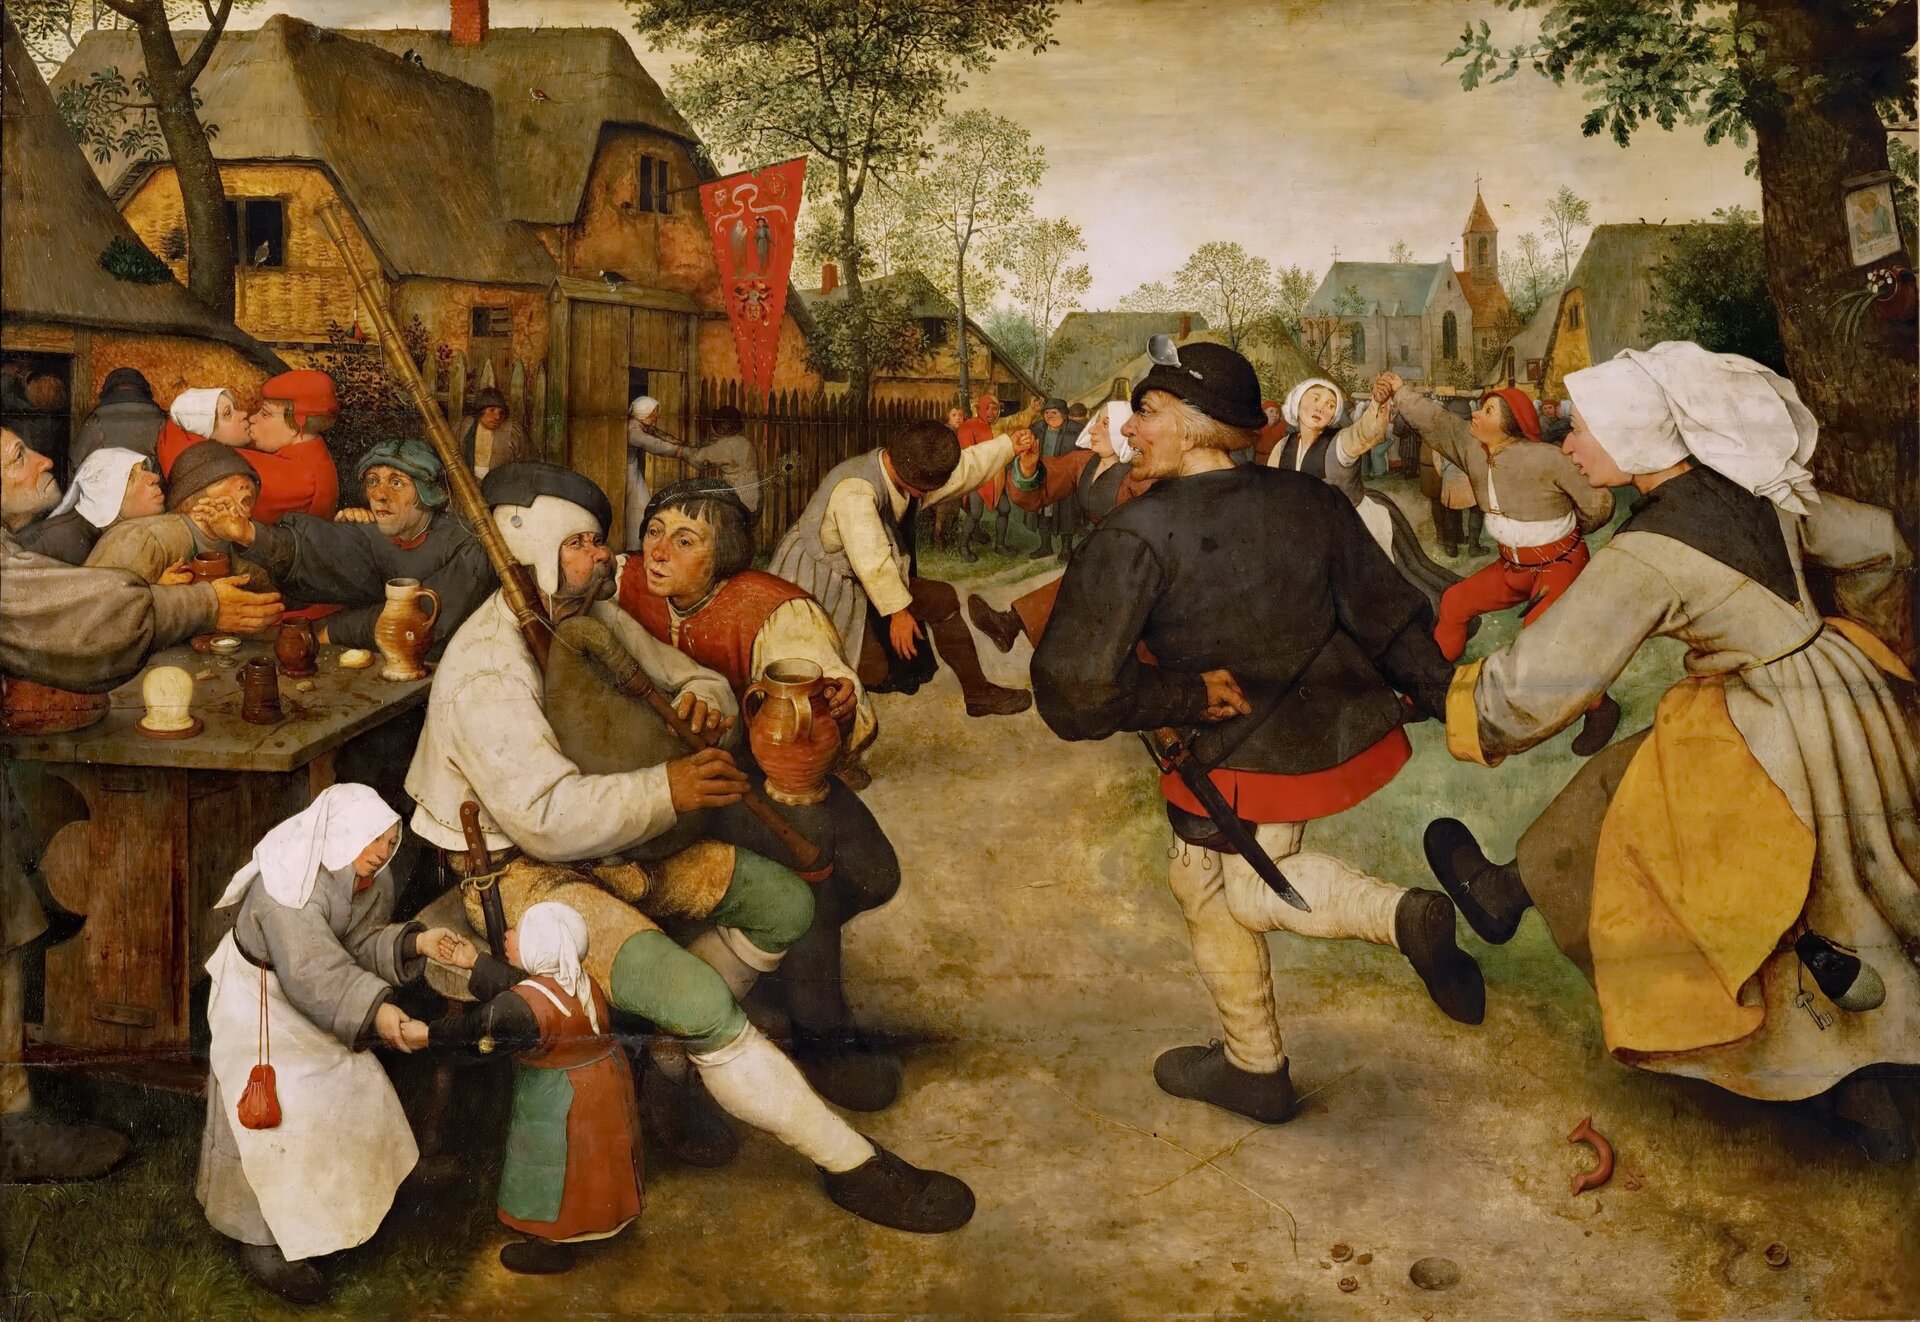 Ilustracja przedstawia obraz Pietera Bruegela Starszego „Taniec chłopski". Po lewej stronie obrazu znajduje się grajek z dudami. Towarzyszy mu postać z dzbanem wina. U jego boku tańczy kobieta z dziewczynką. Za nimi, przy stole chłopi żywo rozmawiają przy kuflach. Po prawej stronie postacie są większe, tańczą trzymając się za ręce. W tle wszyscy się bawią. Przy ulicy stoją wiejskie domy, a na horyzoncie widnieje kościół z wieżą.